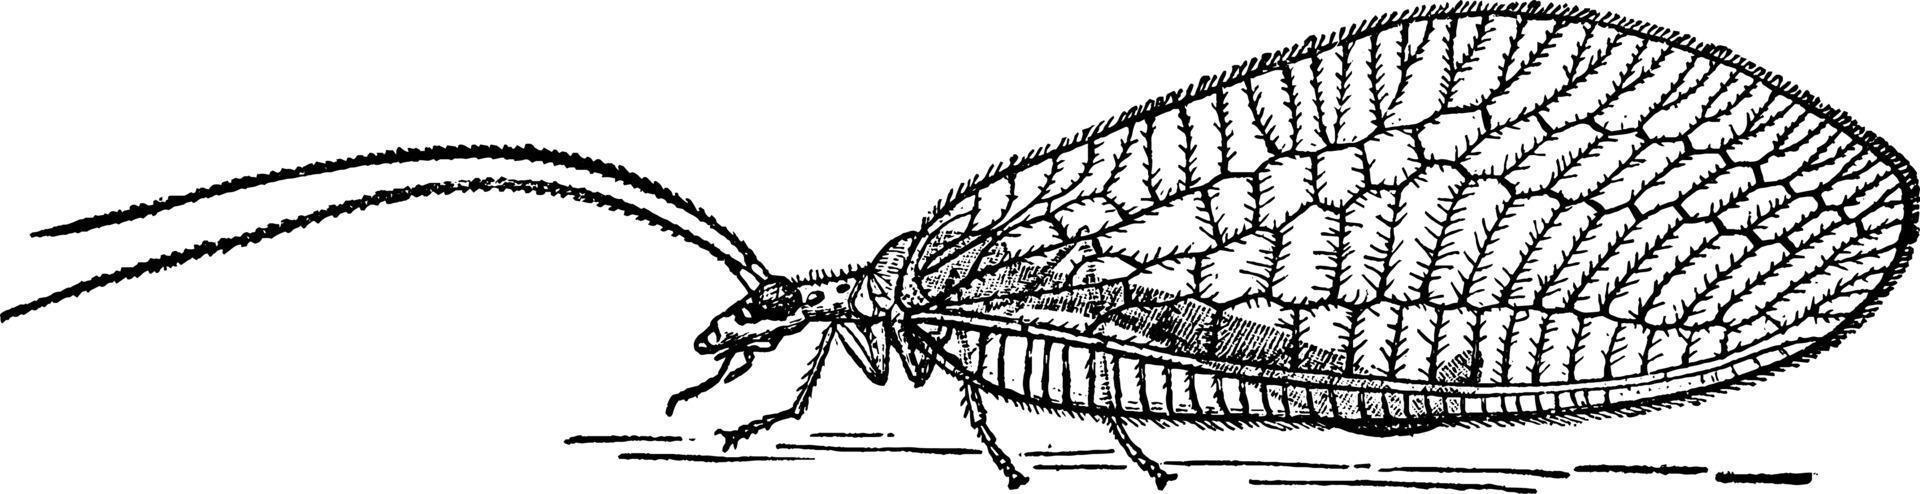 mosca de encaje, ilustración vintage. vector